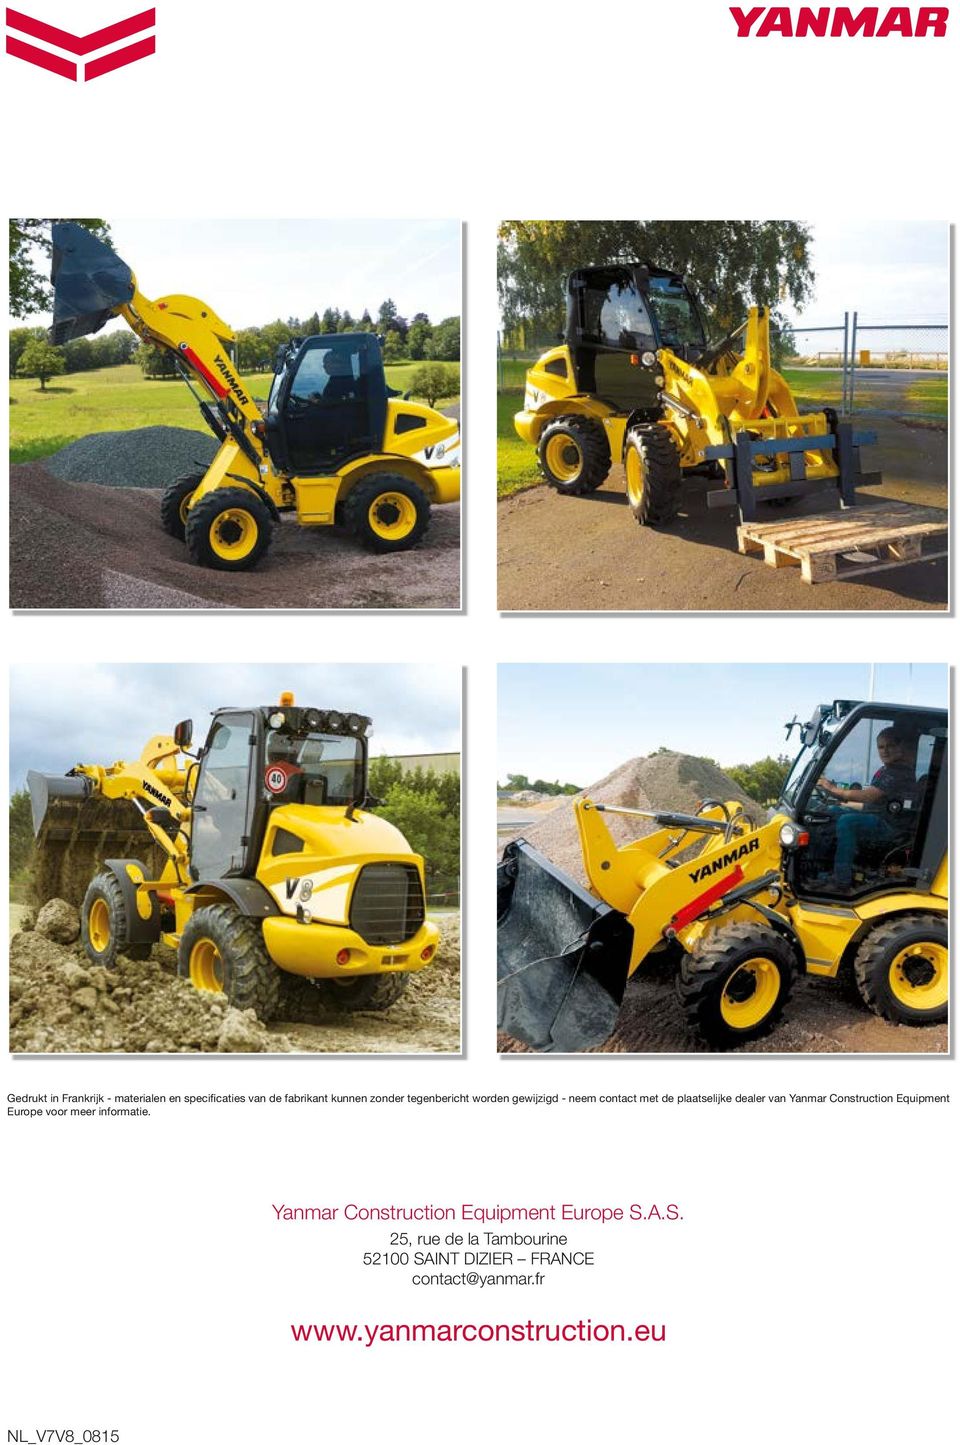 Construction Equipment Europe voor meer informatie. Yanmar Construction Equipment Europe S.